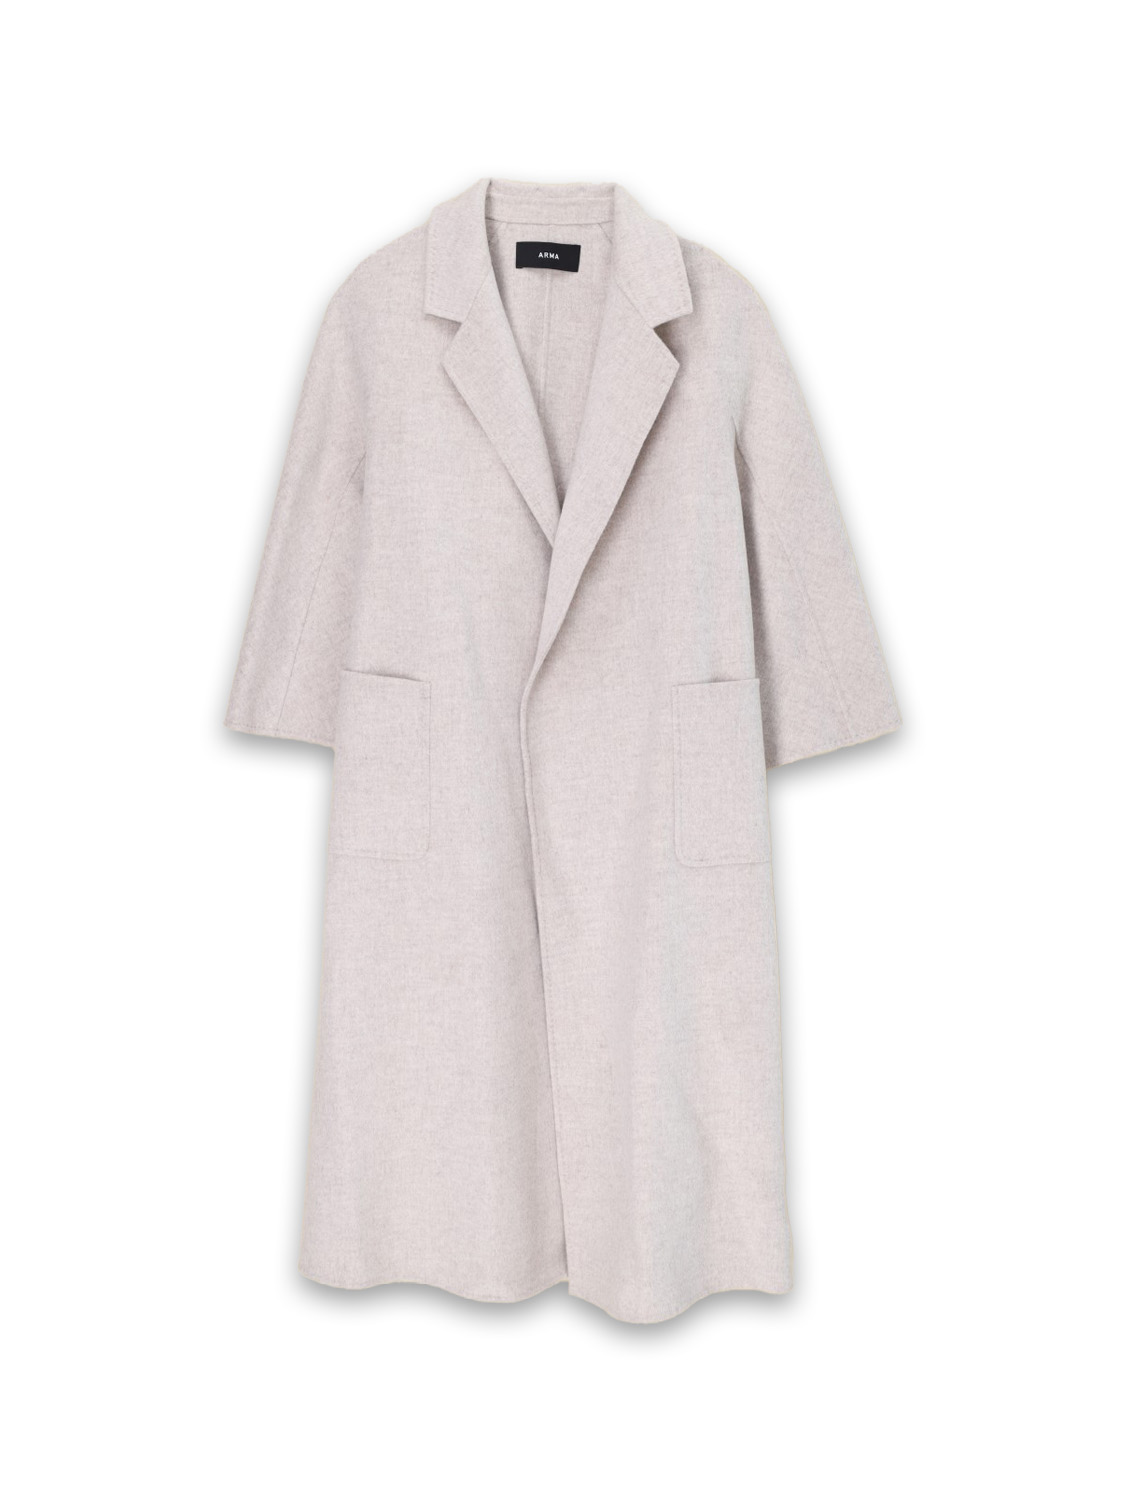 Arma Seguret - Oversized wool coat with tie ribbon  beige 36